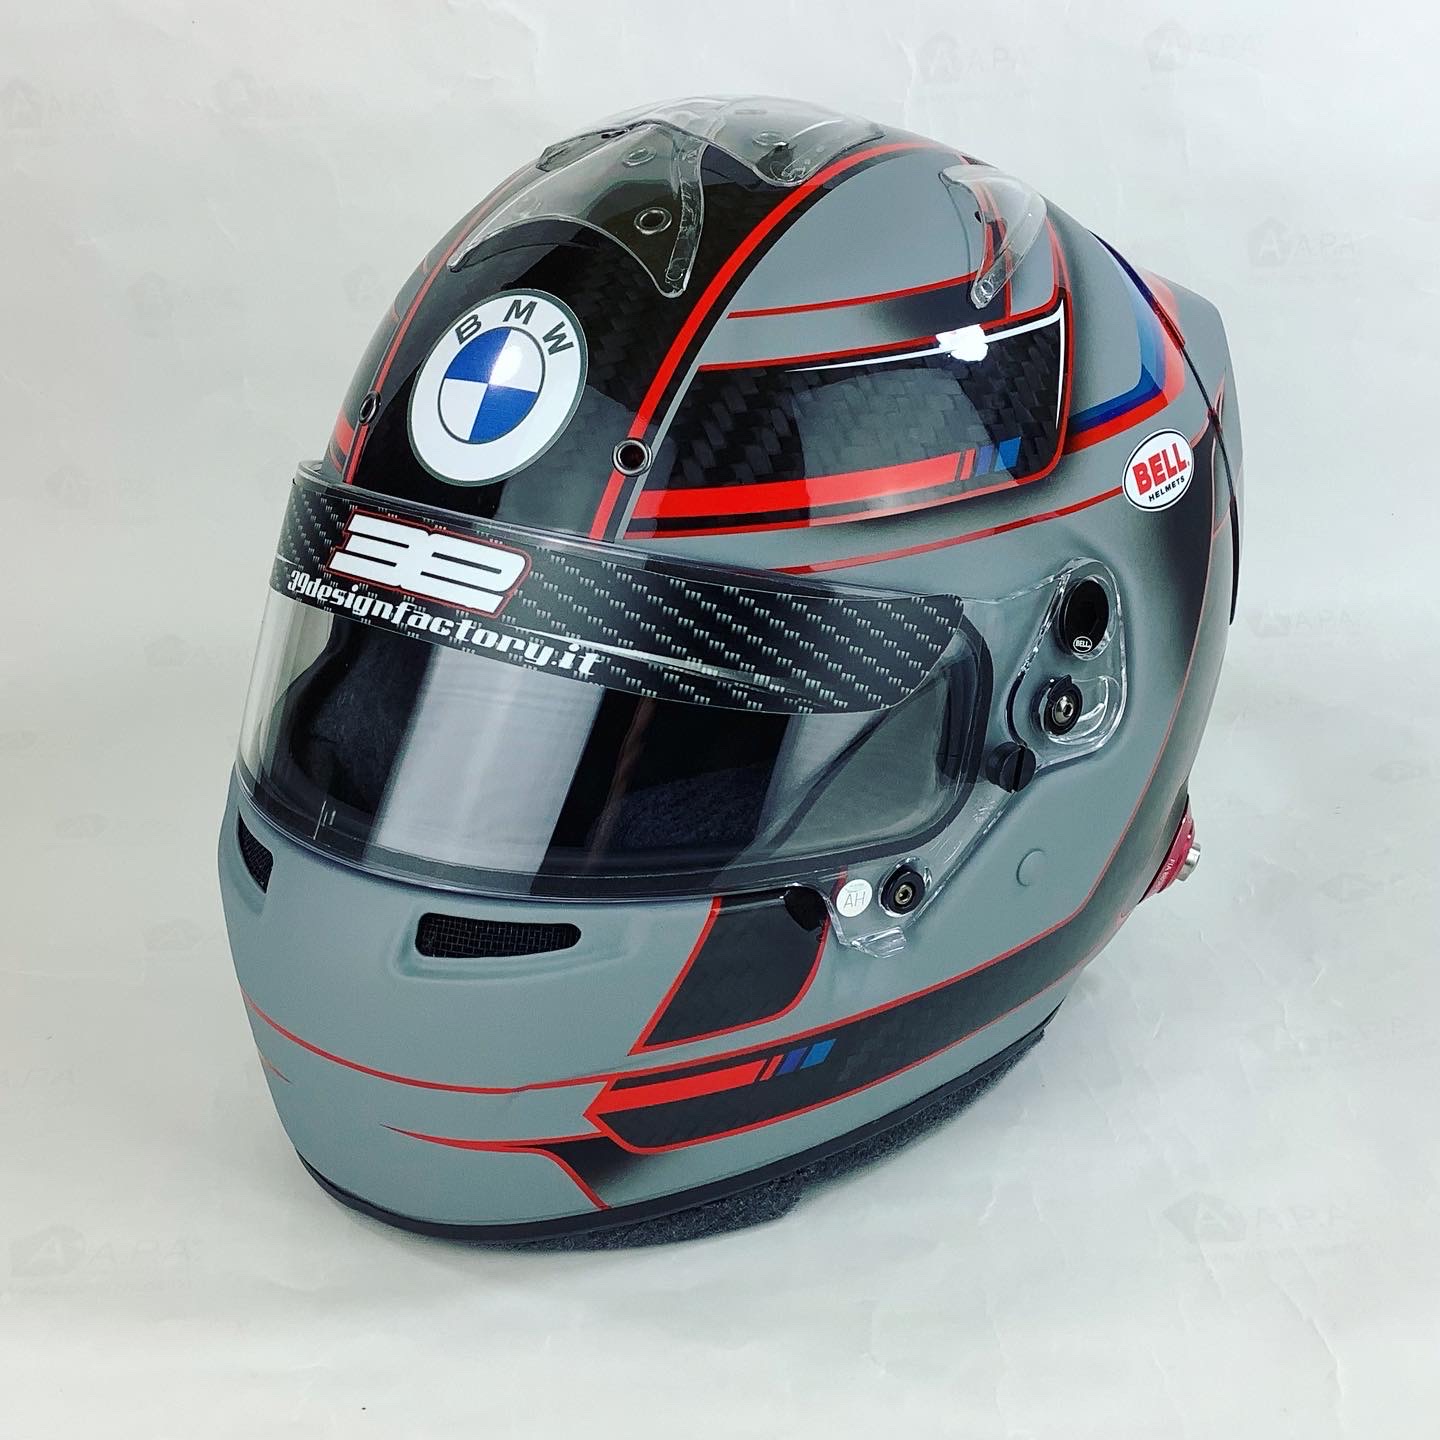 Bmw helmet design